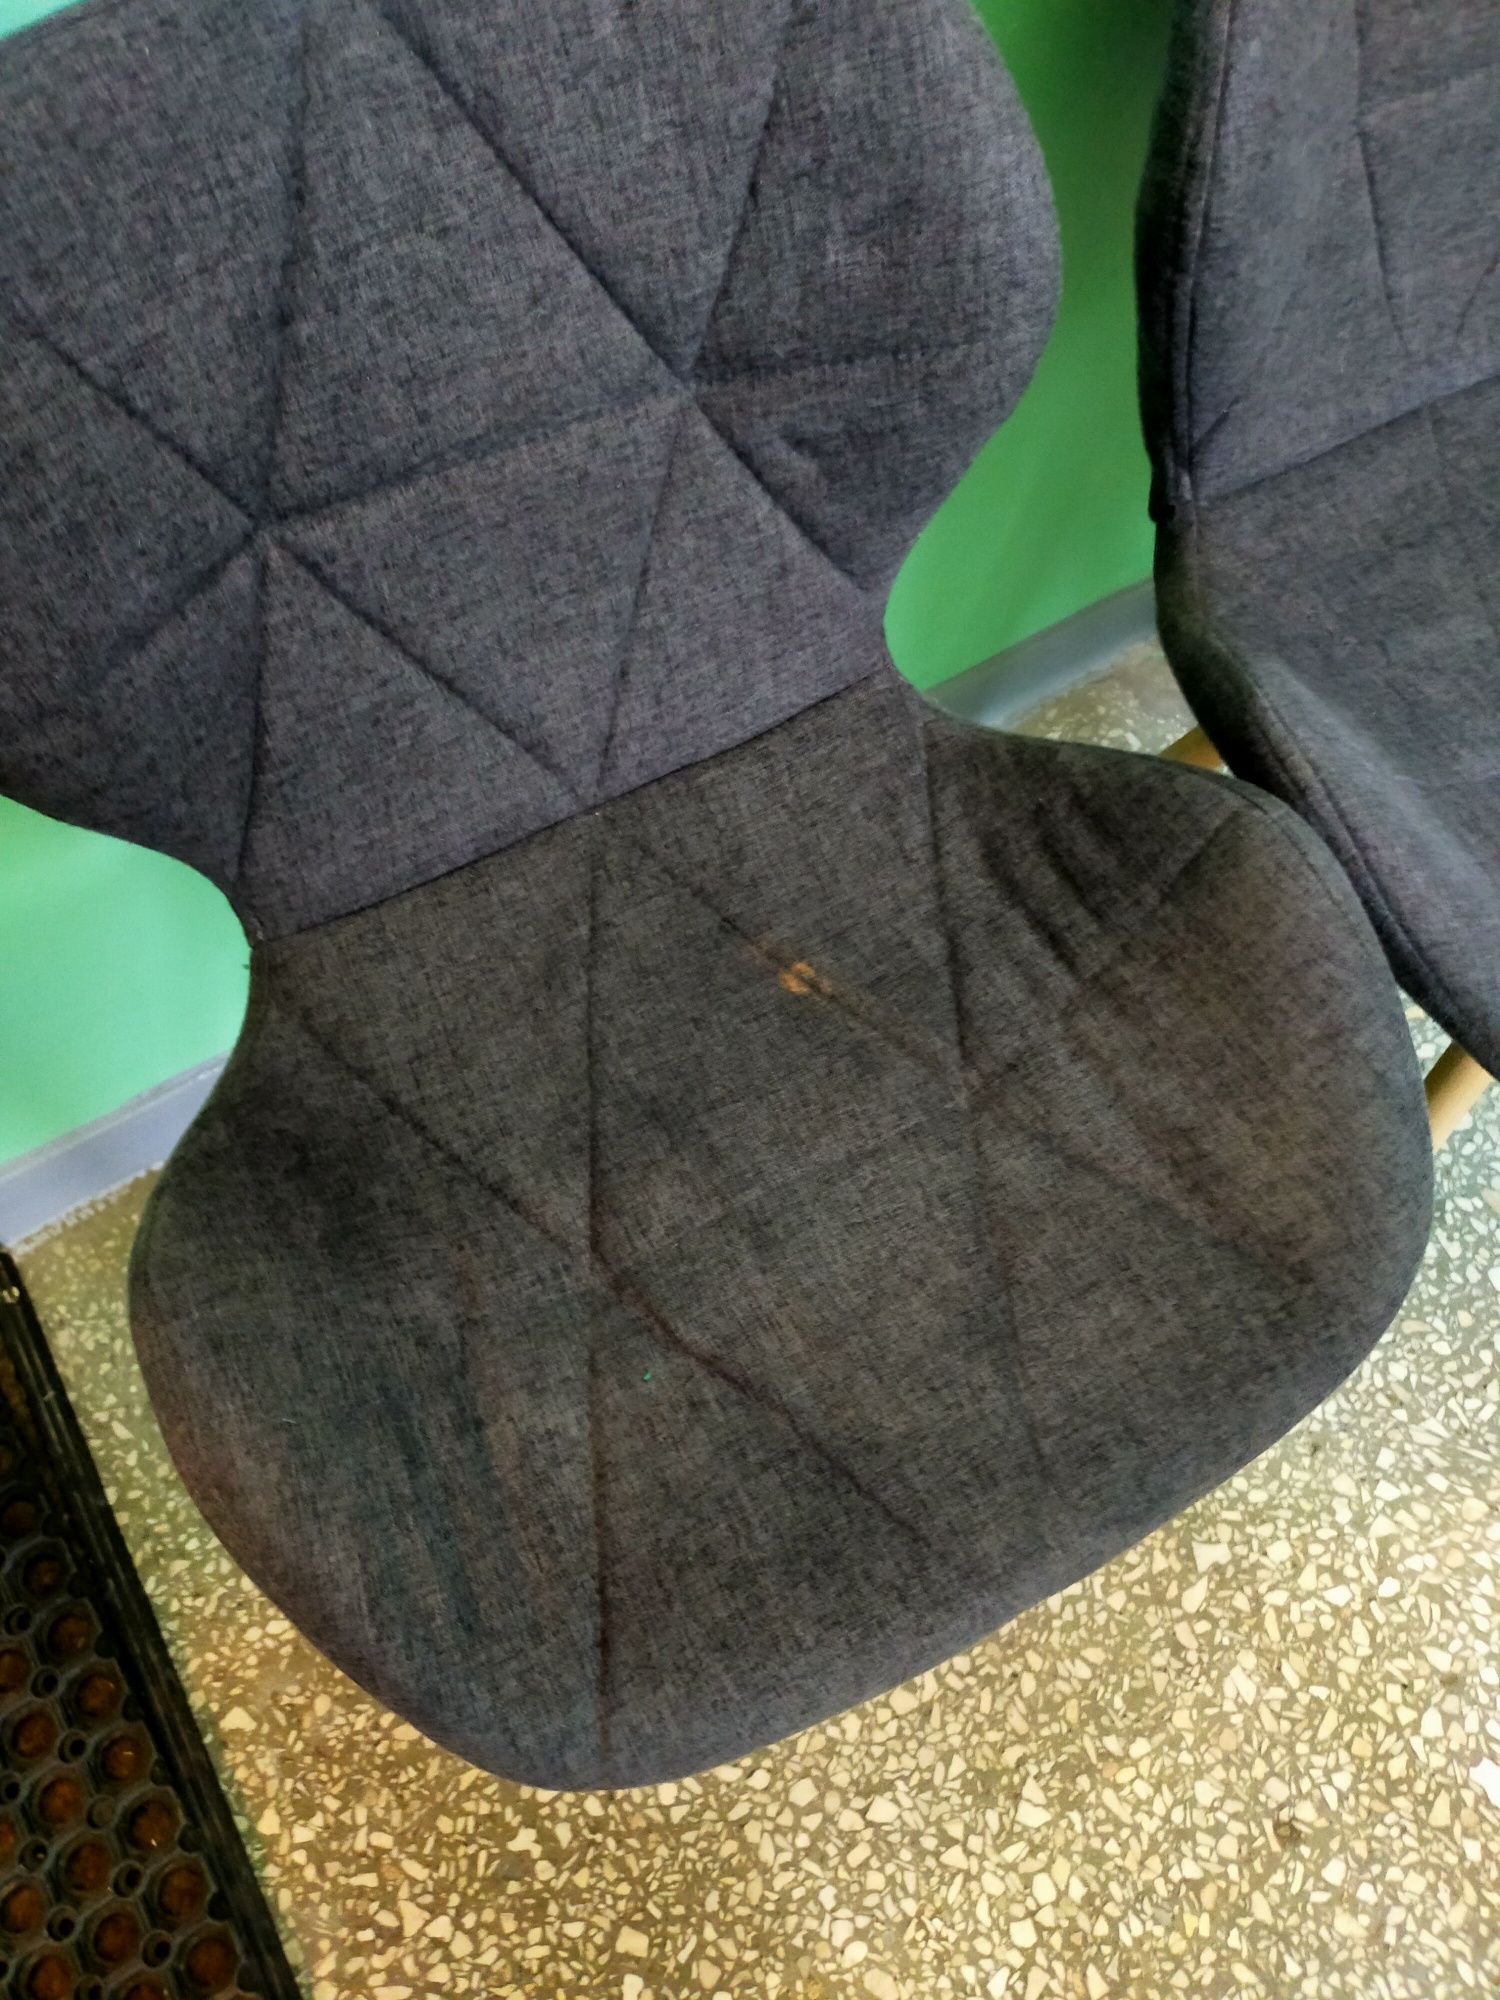 Krzesła tapicerowane szare